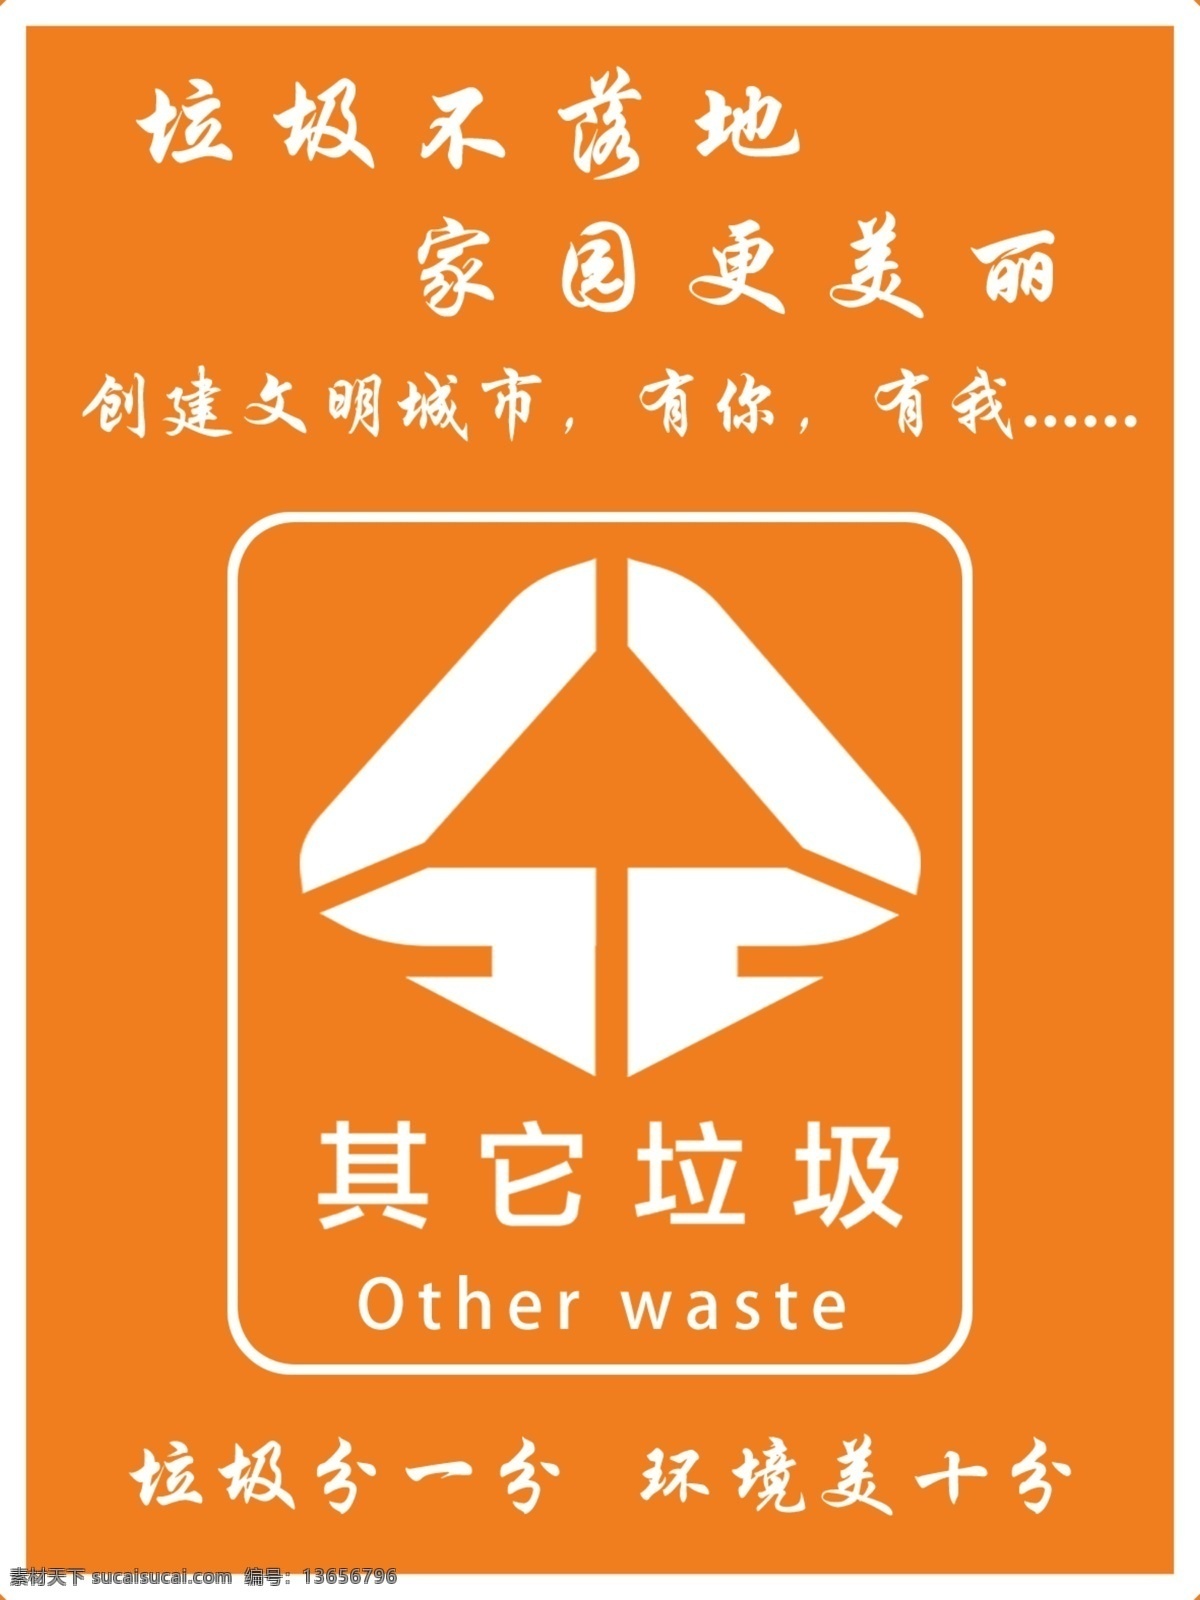 其他垃圾 垃圾分类 垃圾箱标识 垃圾箱标志 垃圾桶标签 可回收 不可回收 金属类 塑料类 分层